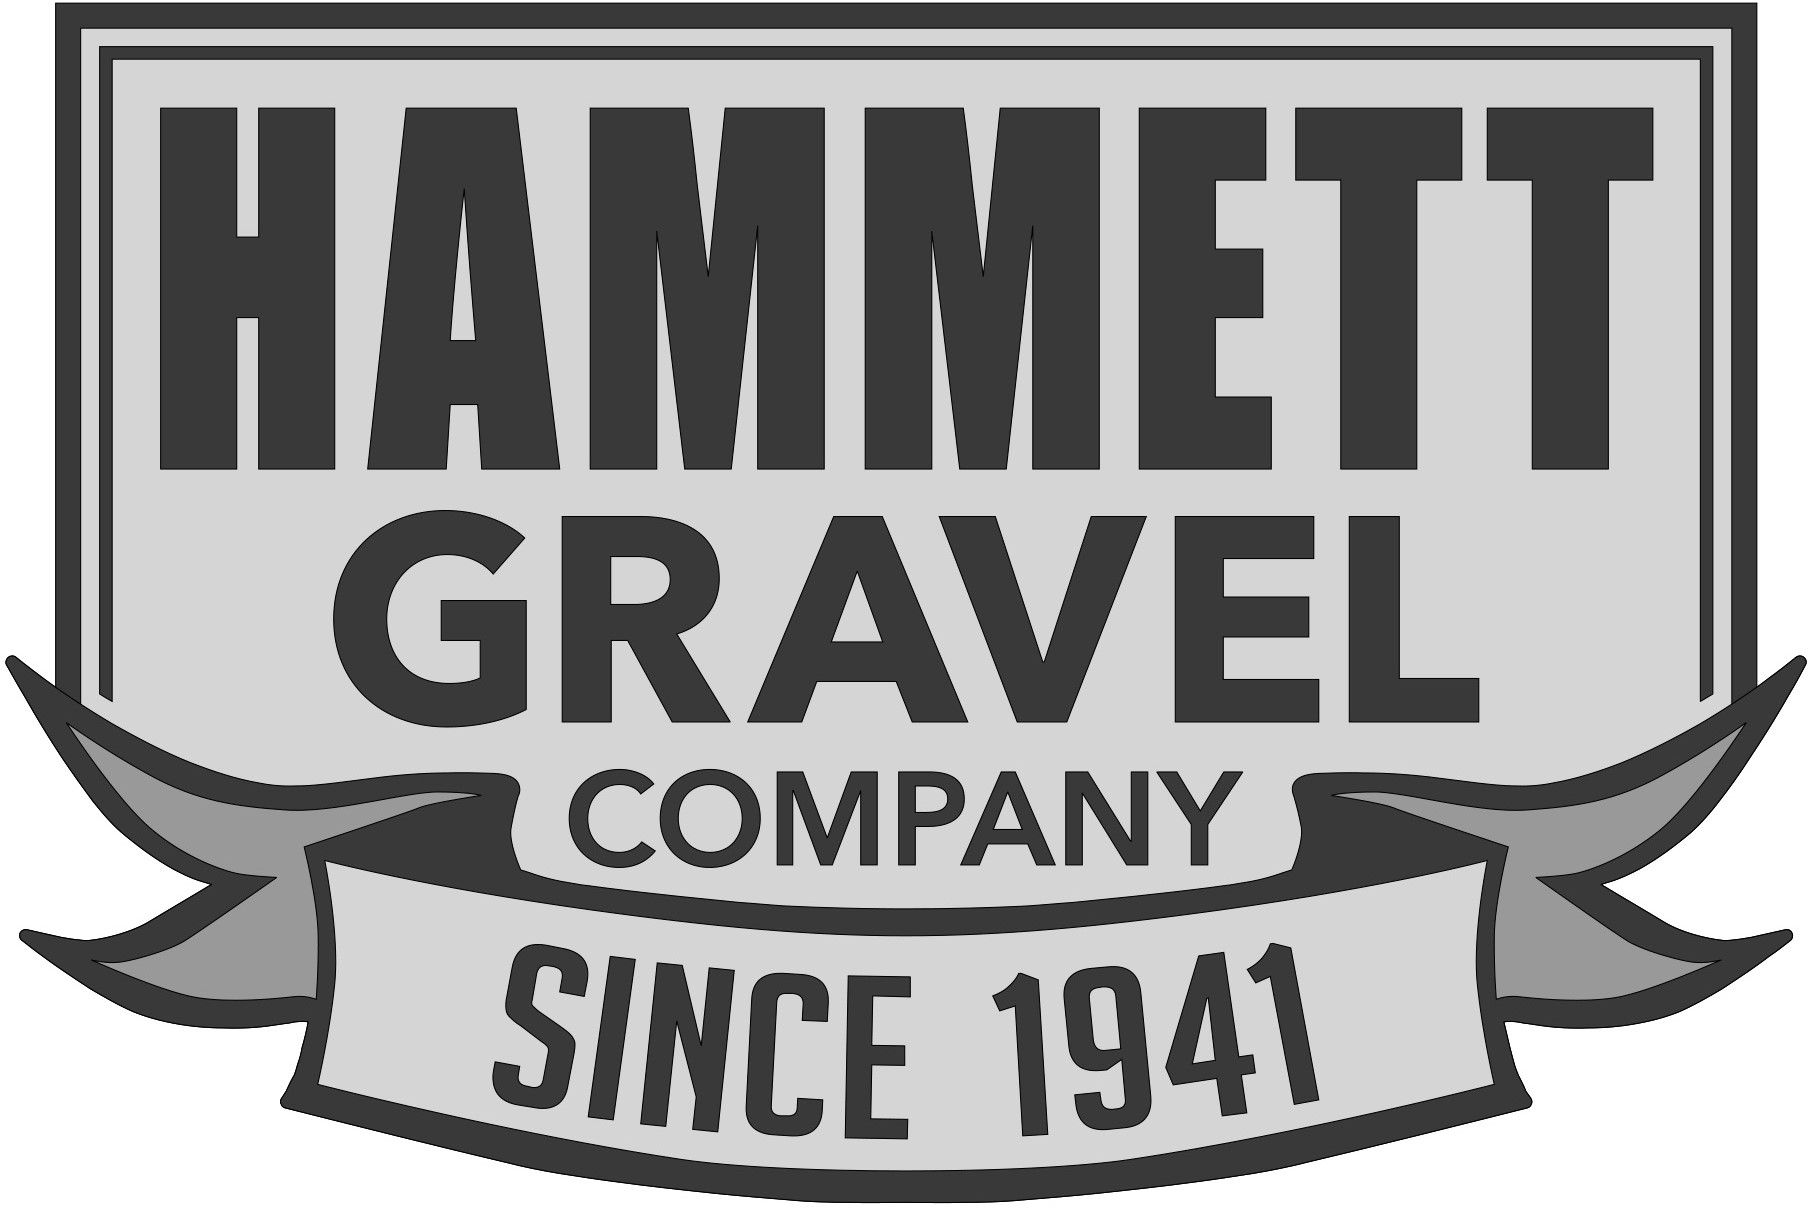 Hammett Gravel Company